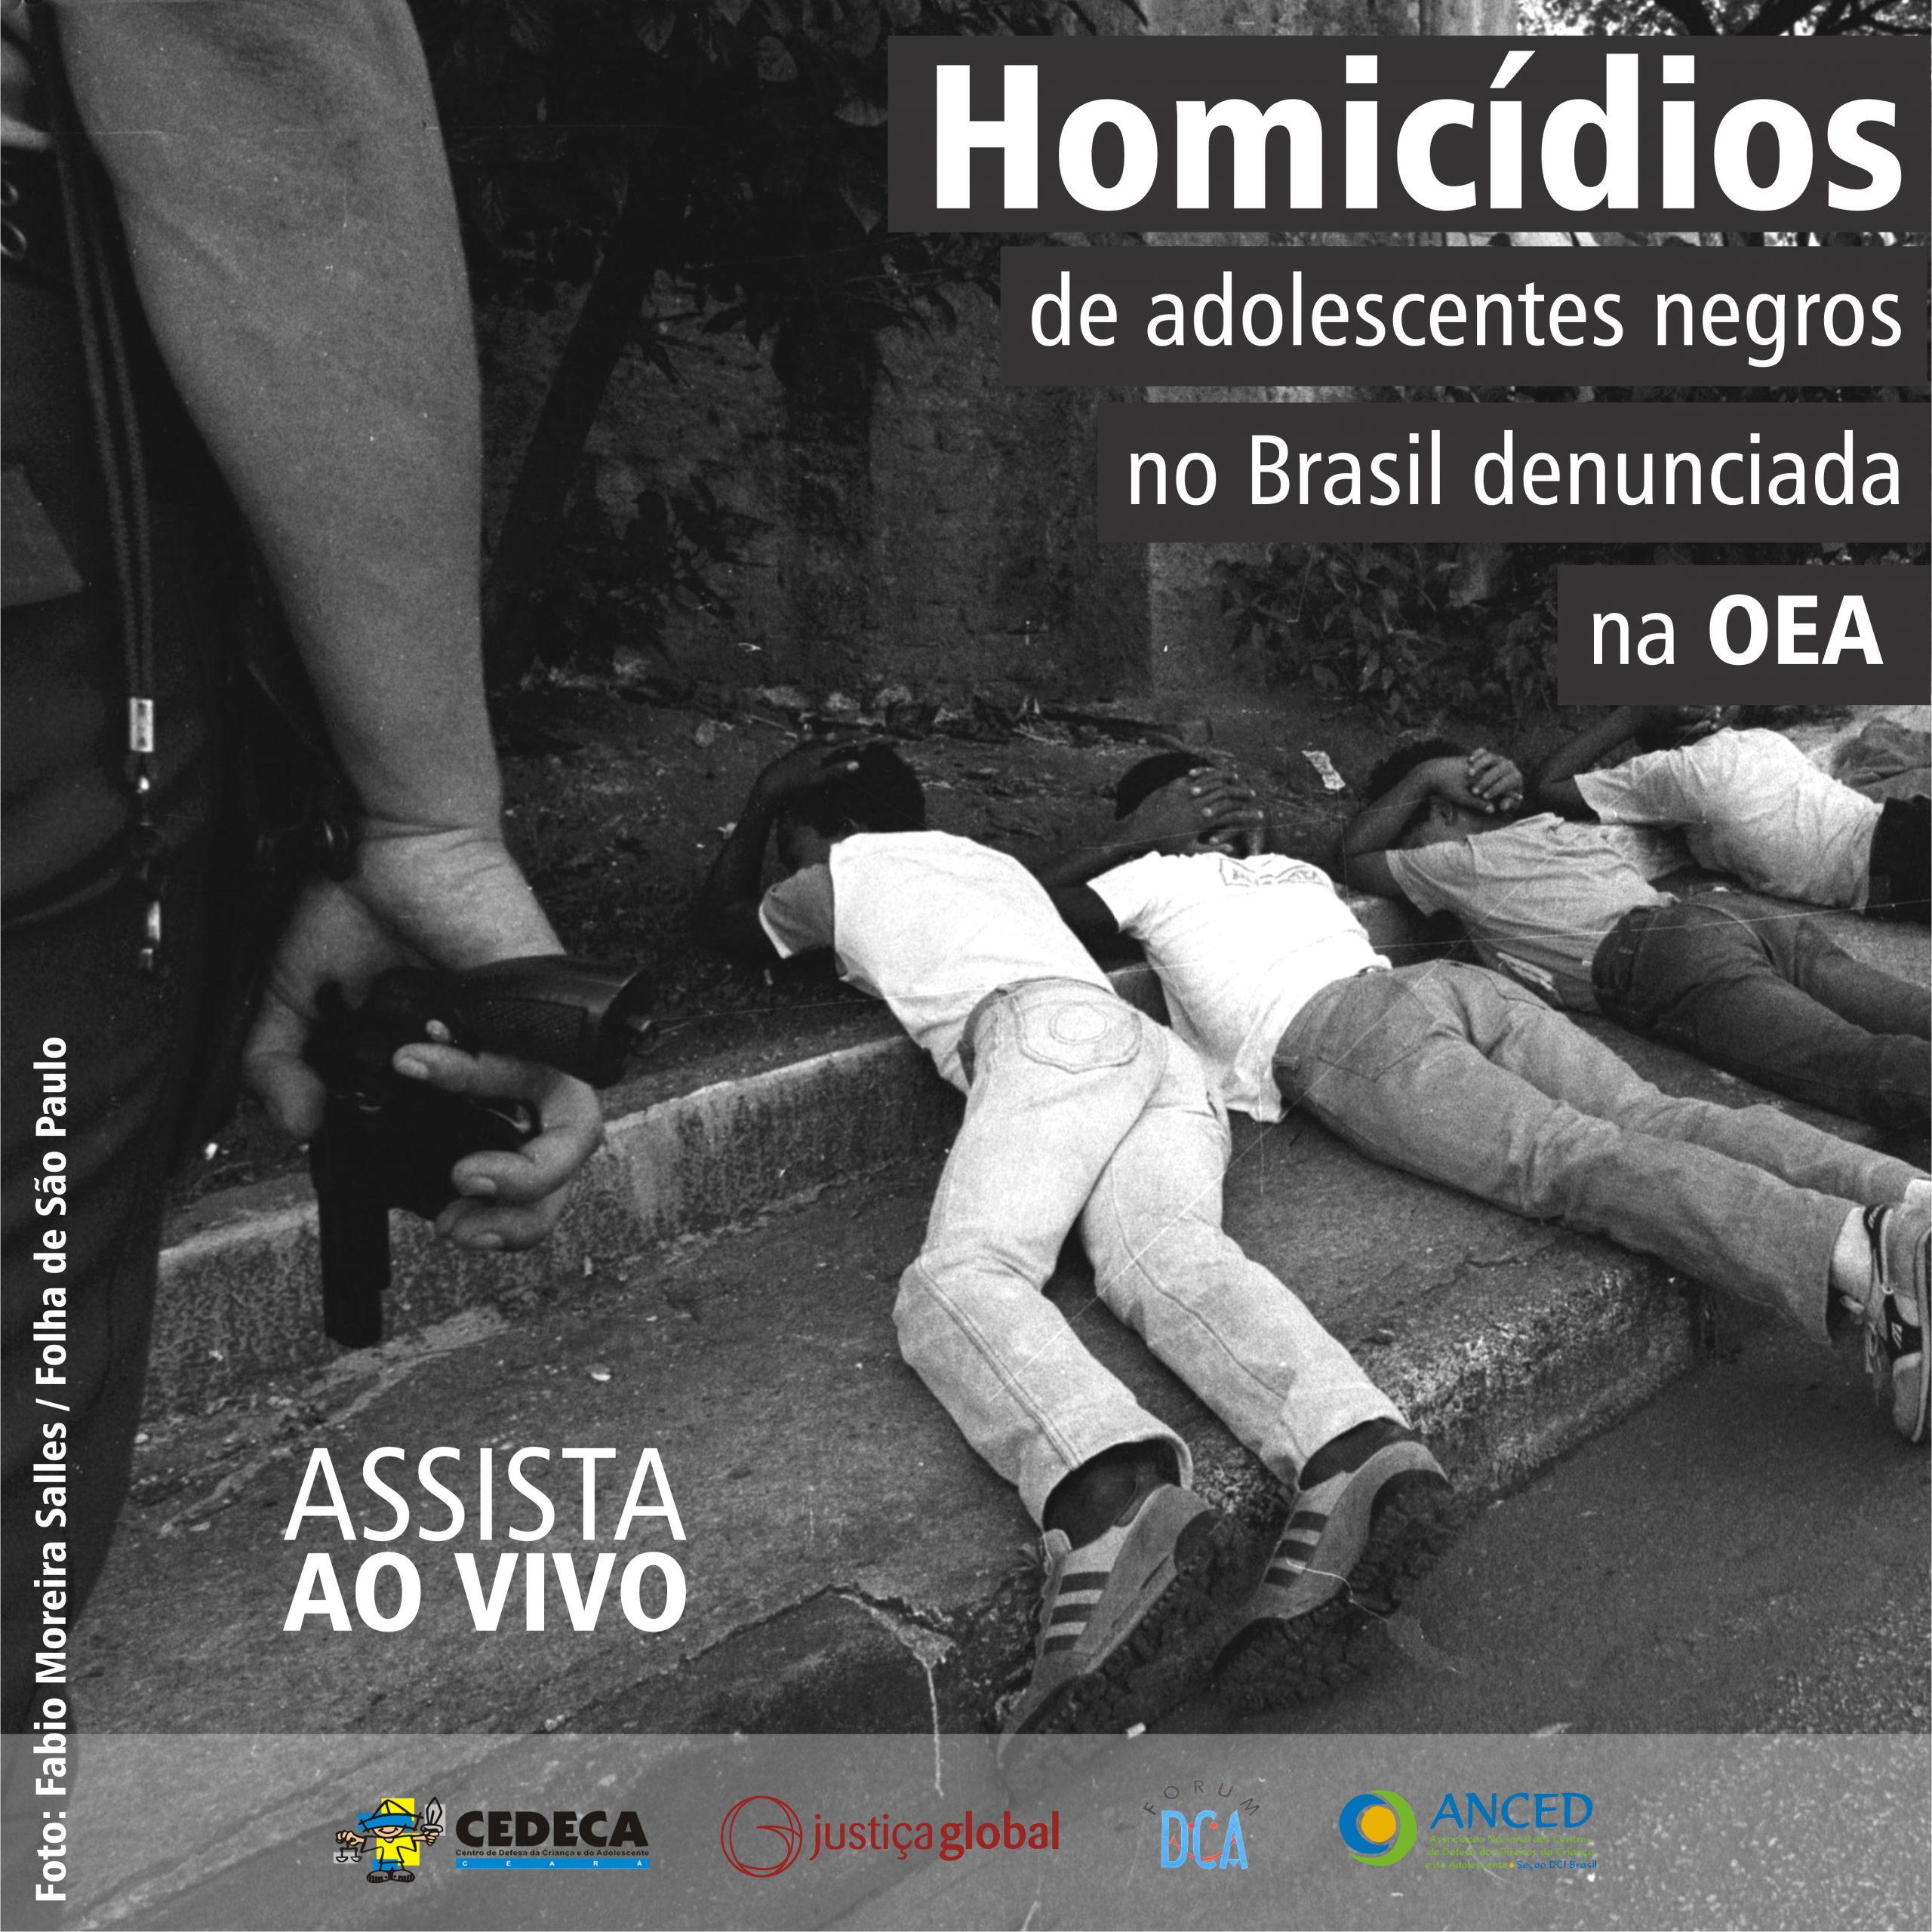 Brasil é questionado na OEA sobre homicídios de adolescentes negros